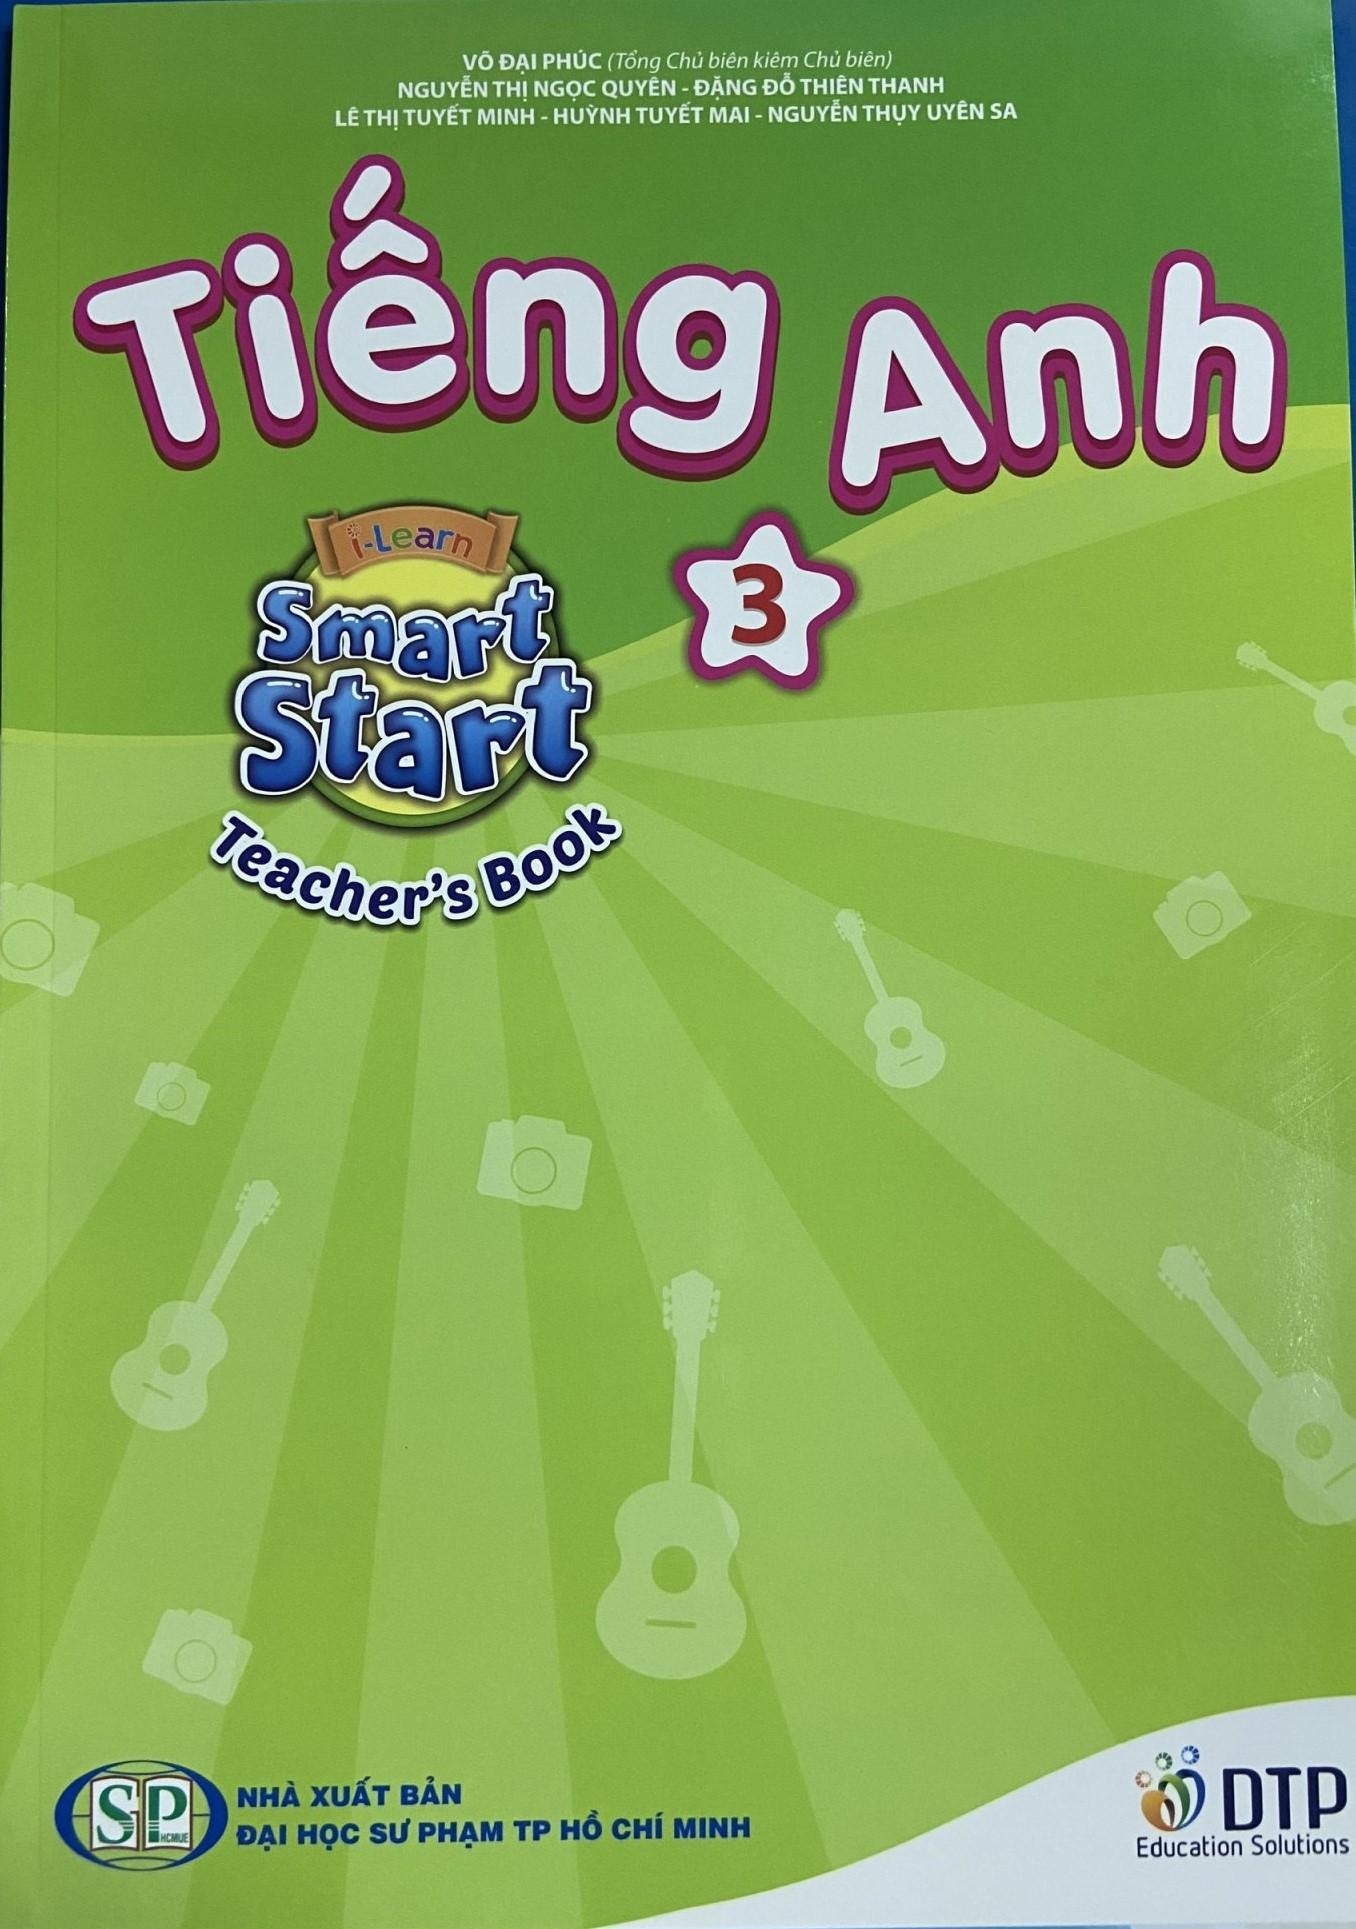 Tiếng Anh 3 i-Learn Smart Start Teacher's book (Sách giáo viên)